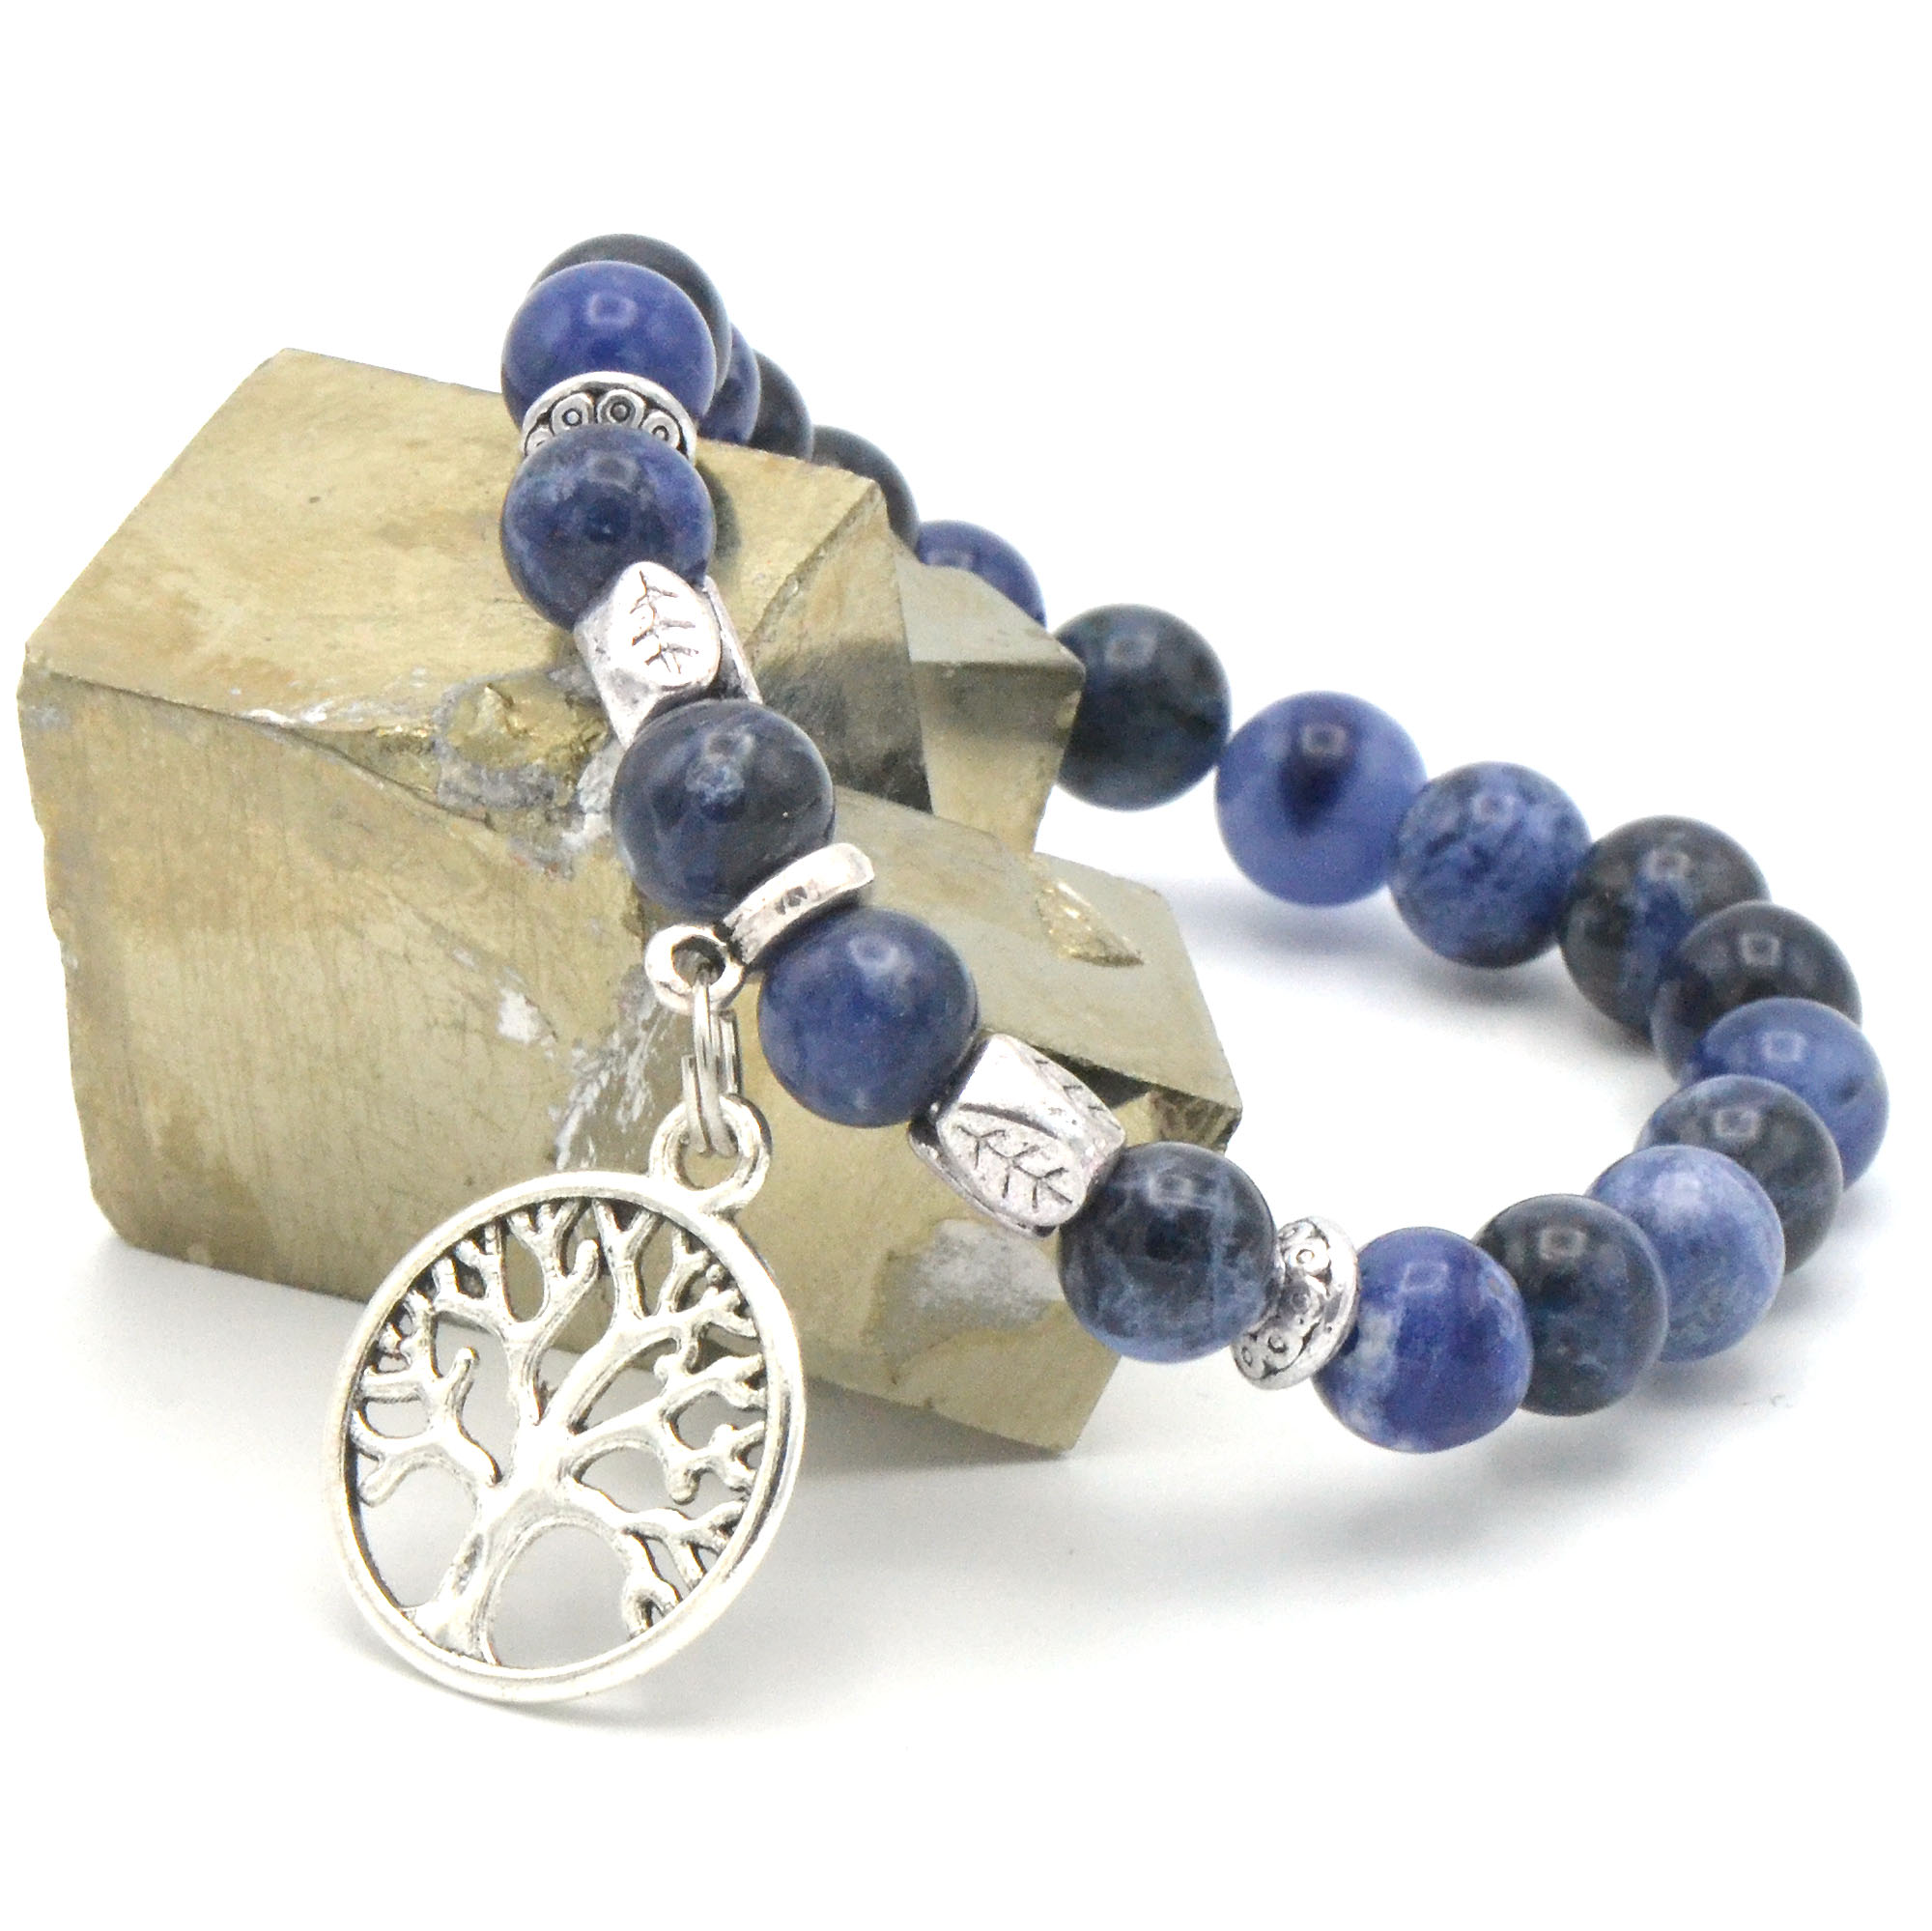 Bracelet élastique breloques arbre de vie en perles de lapis lazuli